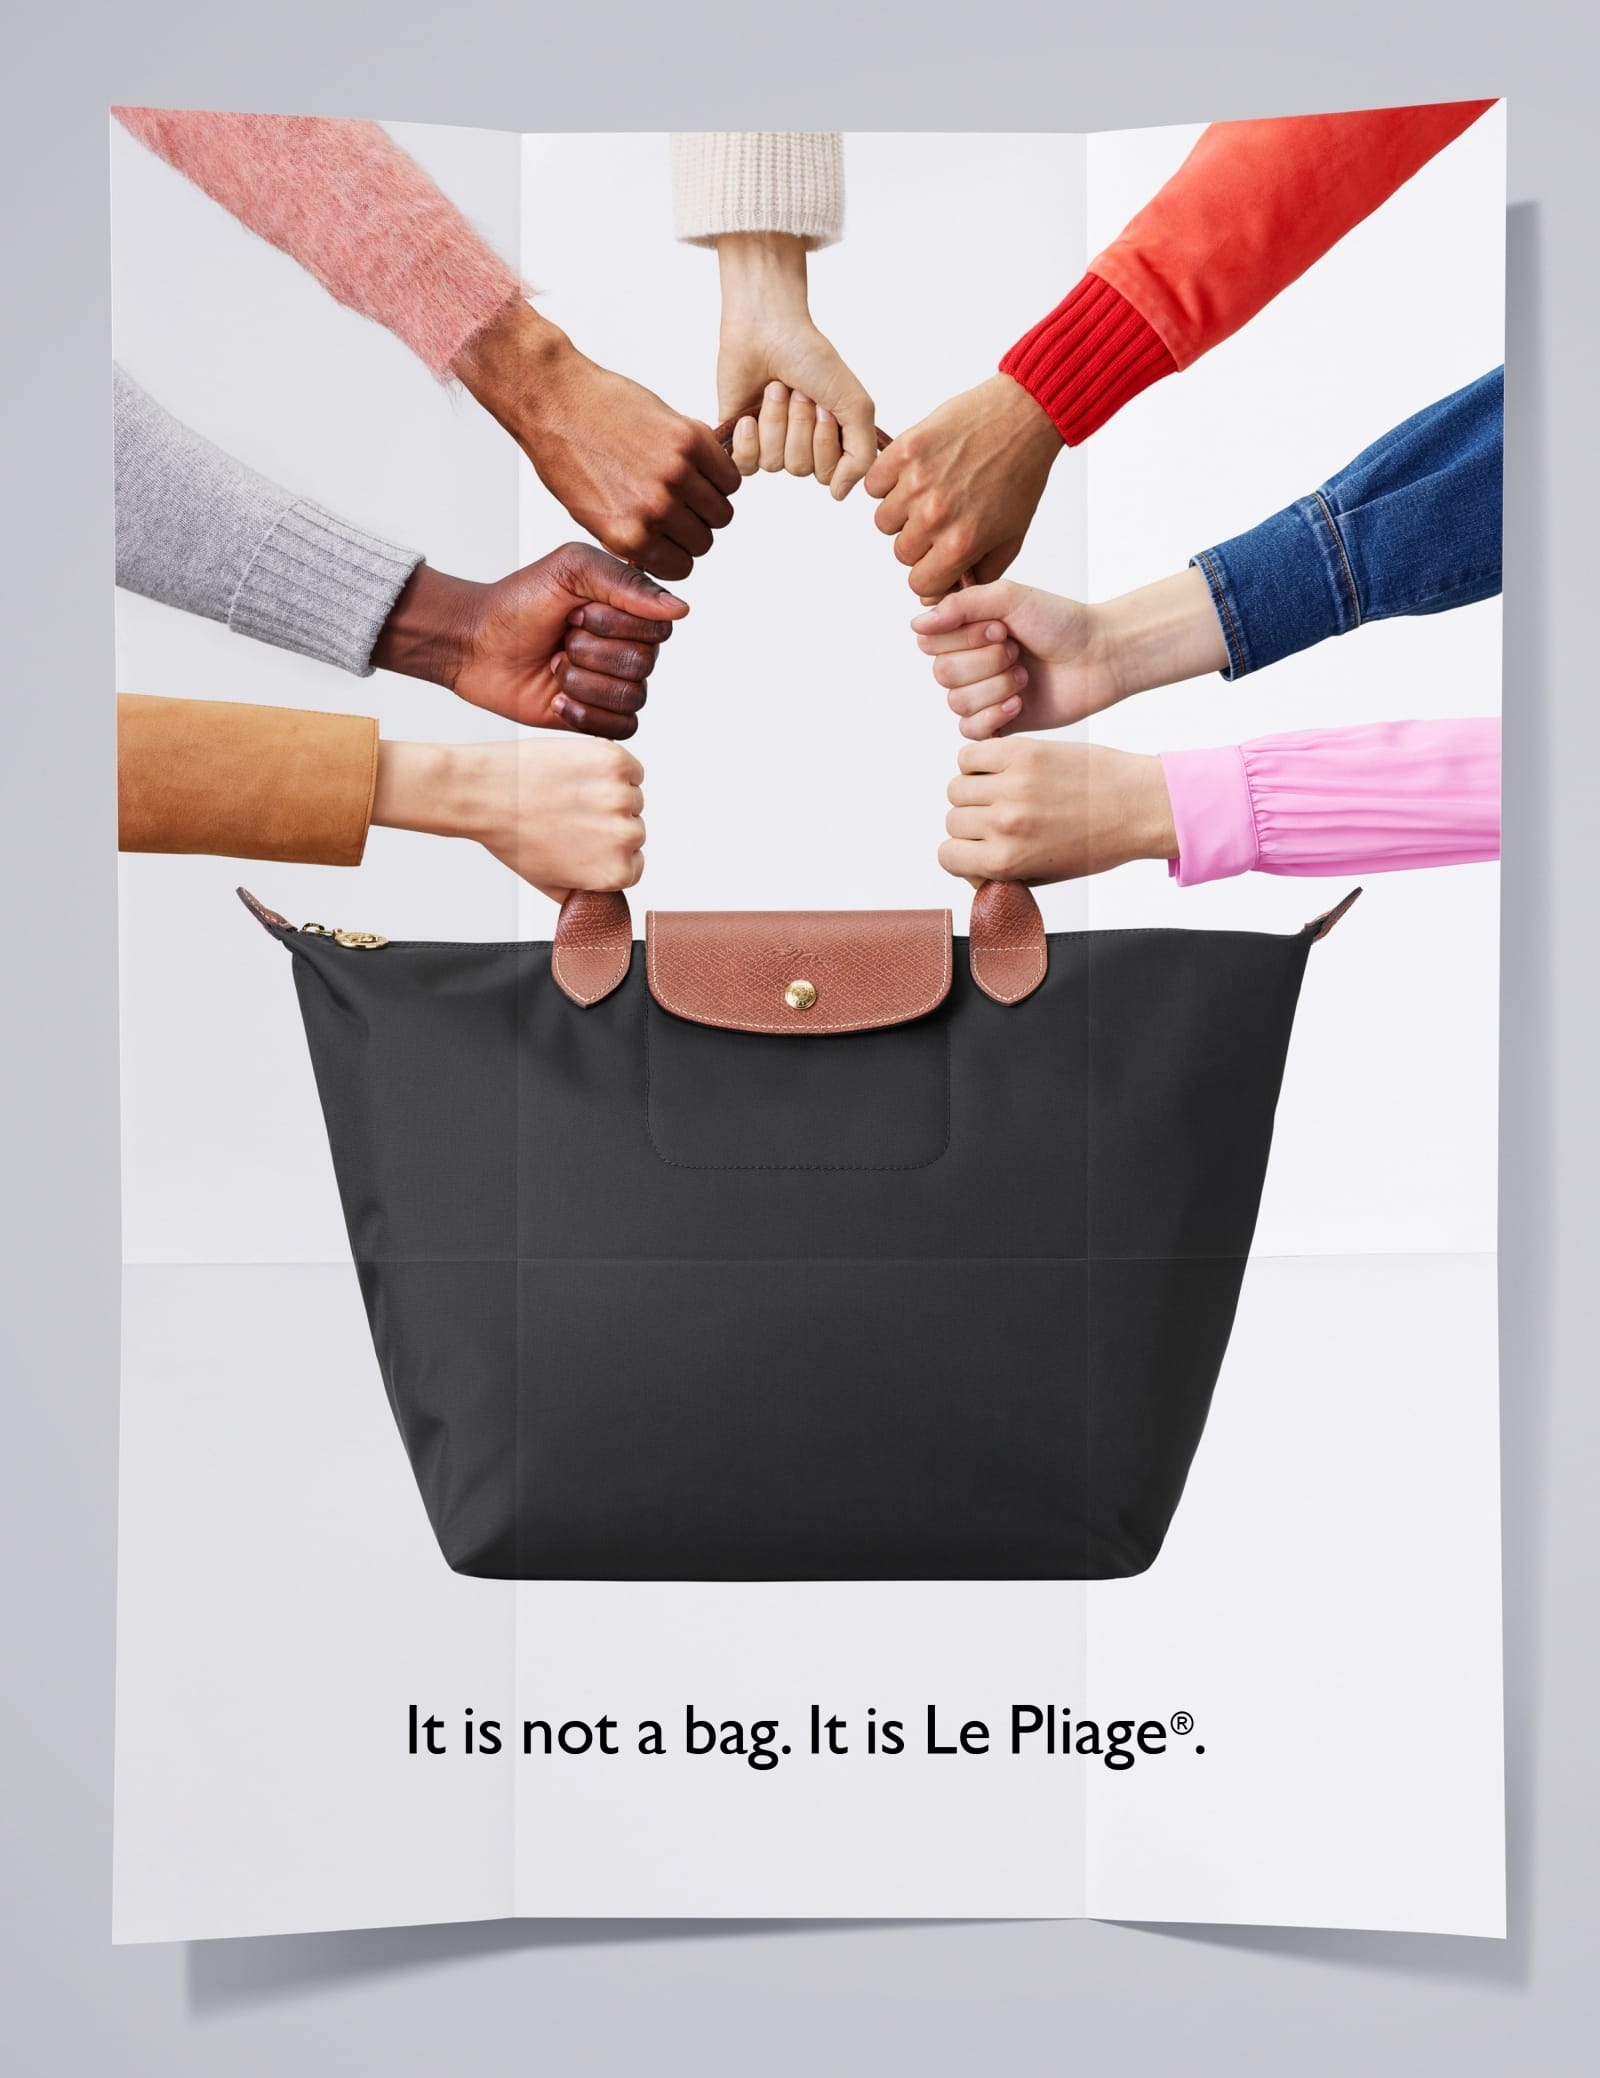 Studio Sander Plug – Longchamp - It is not a bag. It is le Pliage.